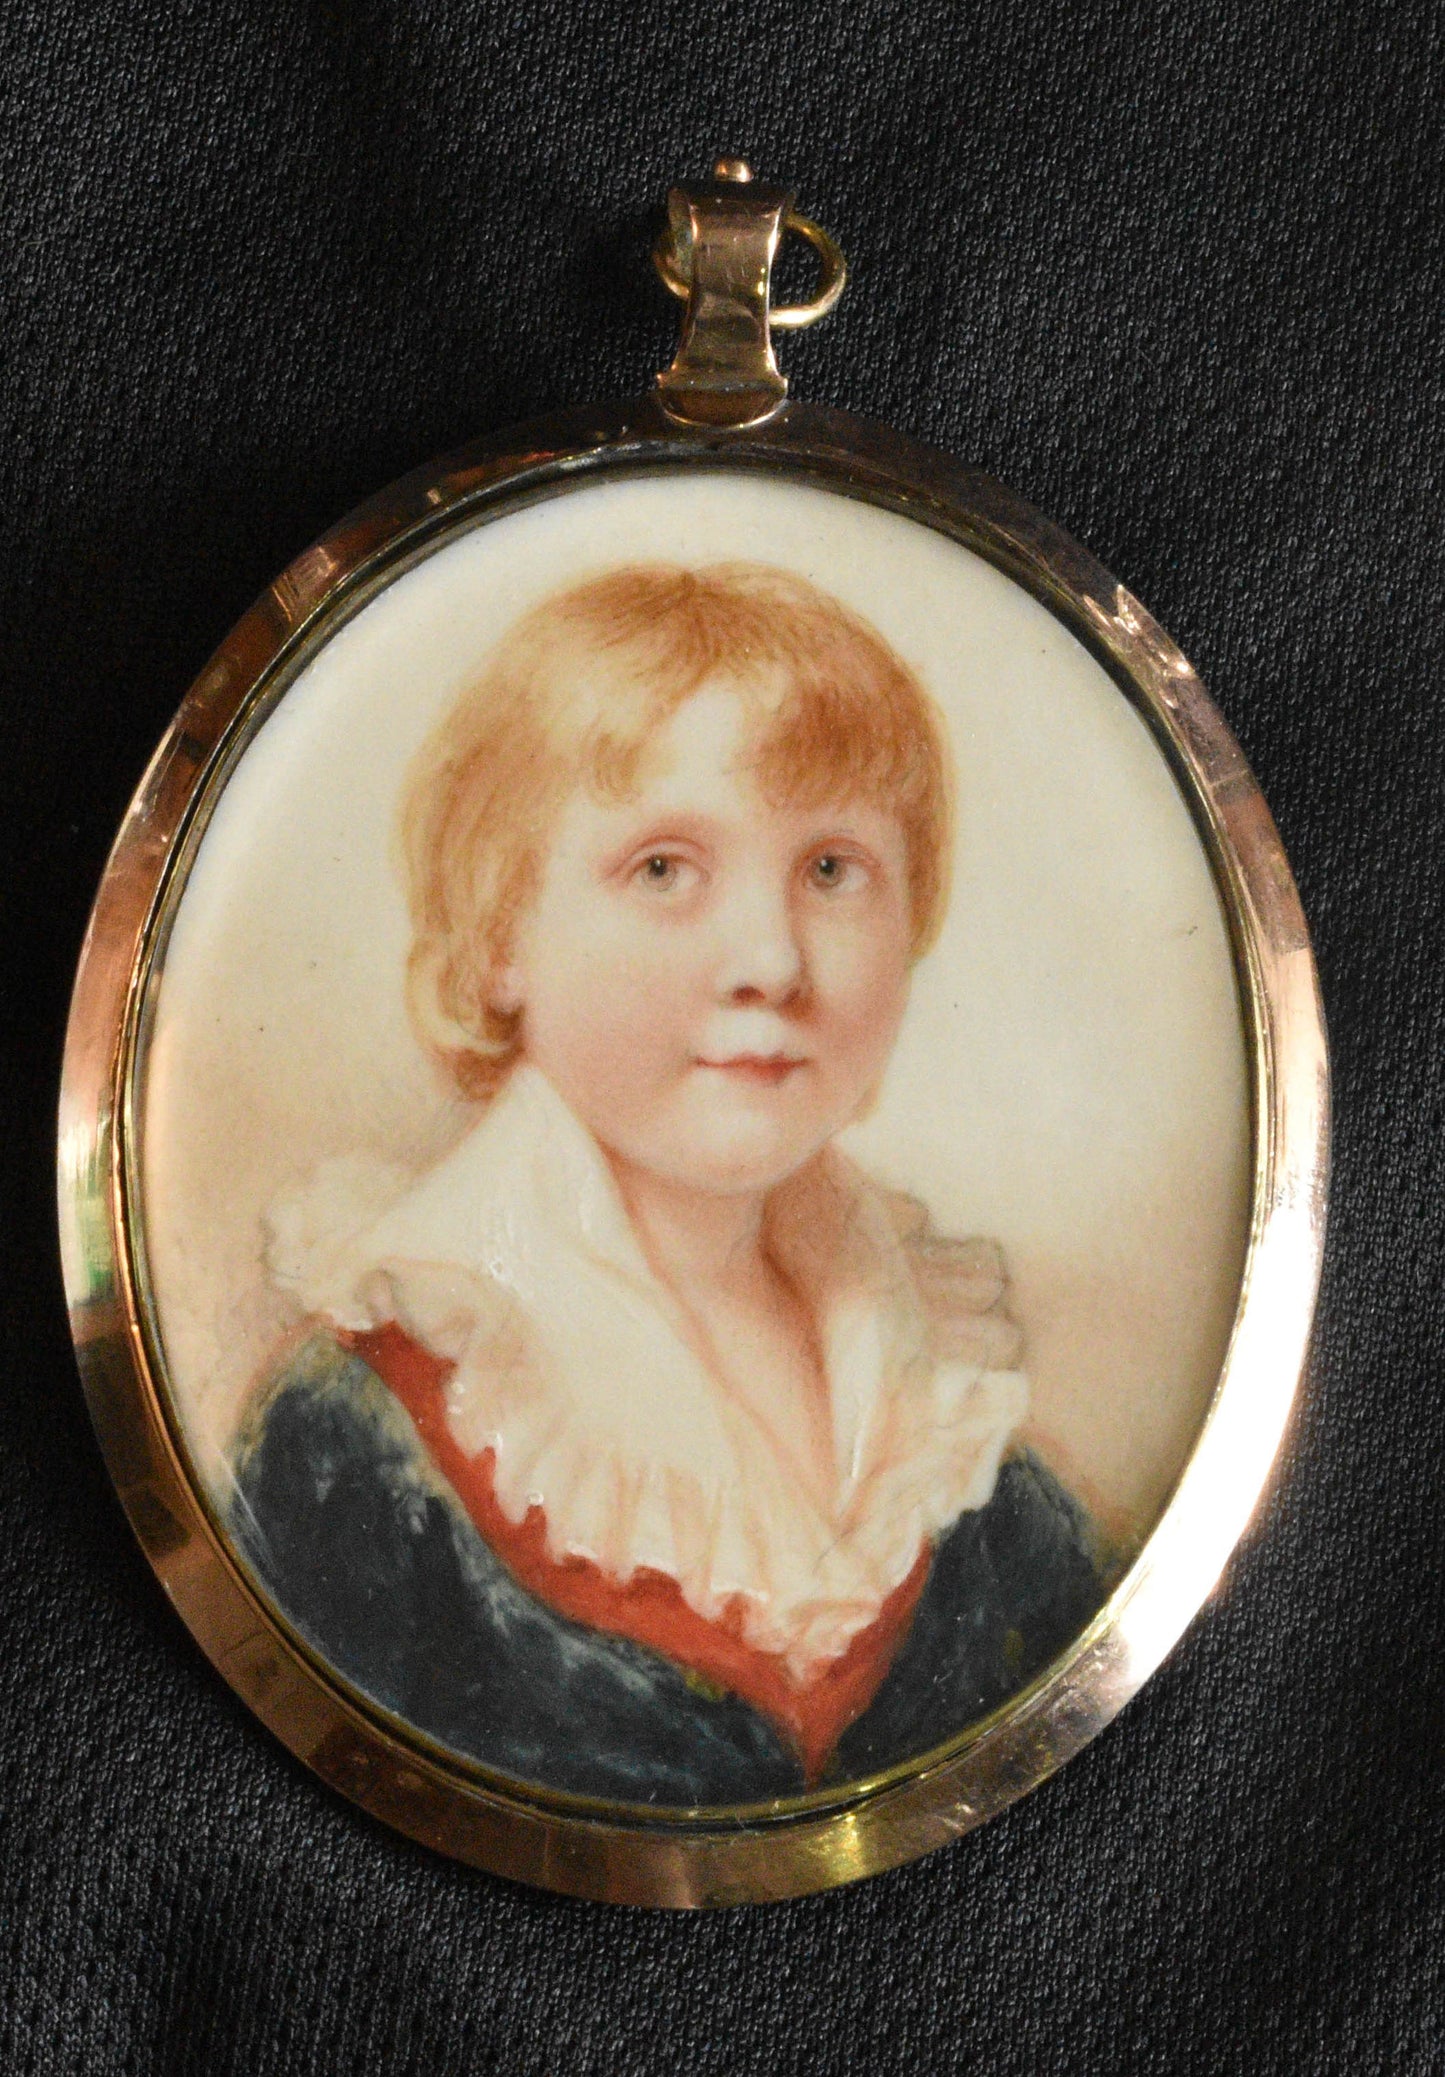 Portrait Miniature of a young boy. Abraham Daniel.